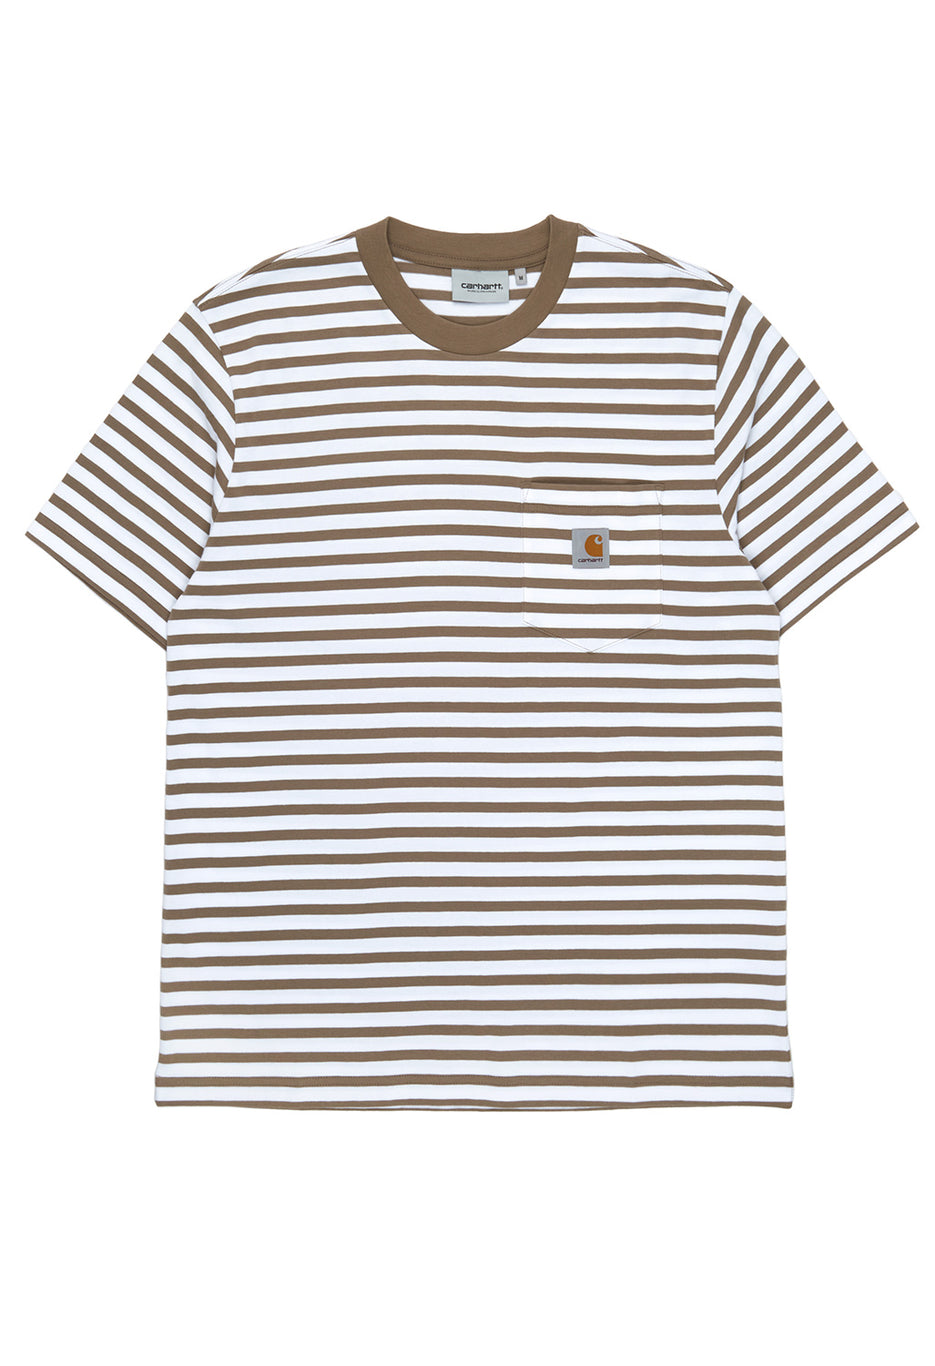 Carhartt WIP Men's Seidler Pocket T-Shirt - Seidler Stripe, Branch / White